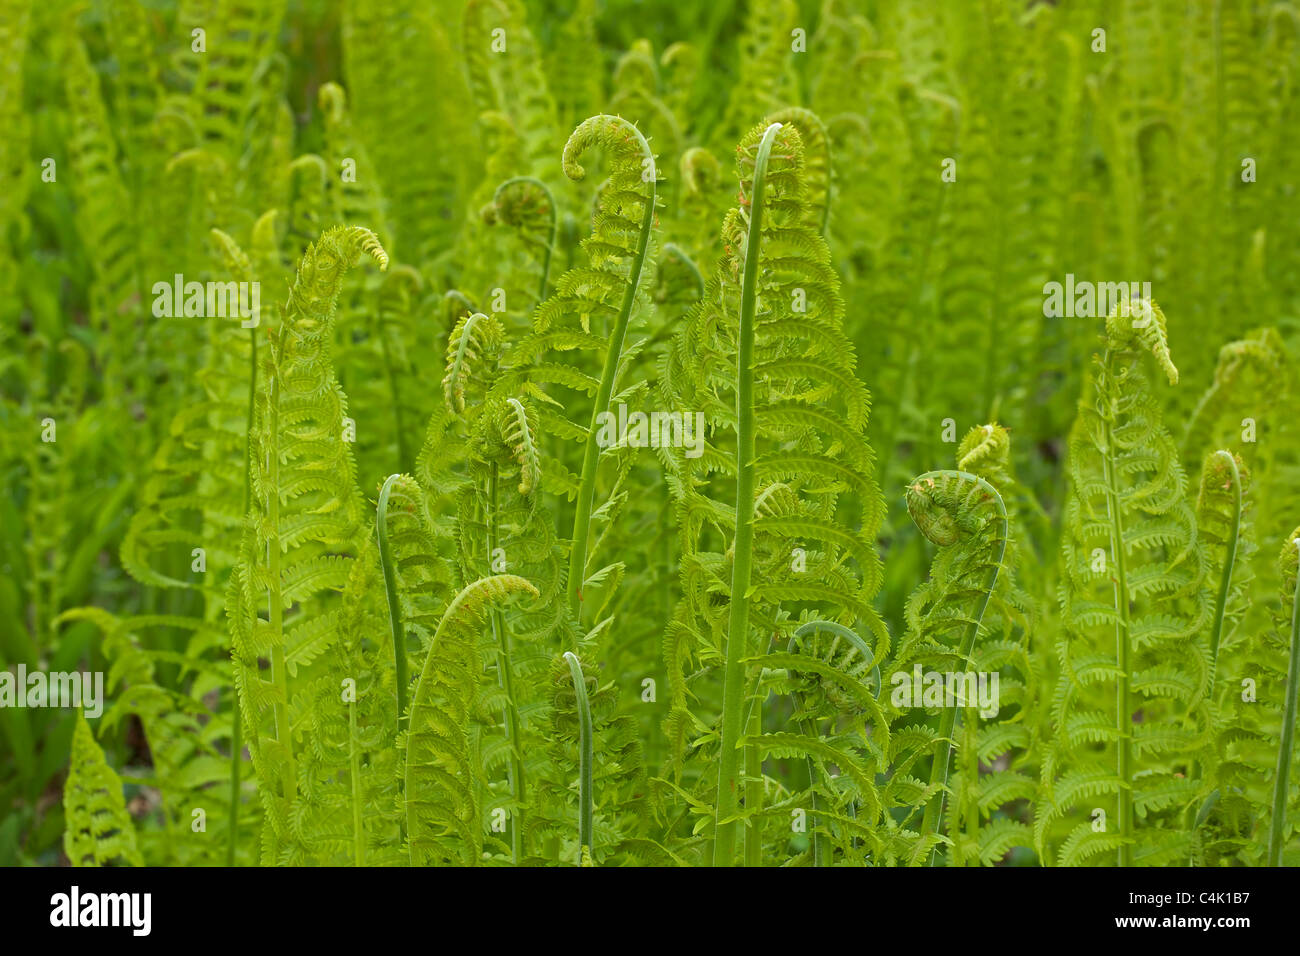 Señora Fern (Athyrium filix-femina) - New York - USA - Una planta dominante en el sotobosque de la taiga de América del Norte Foto de stock